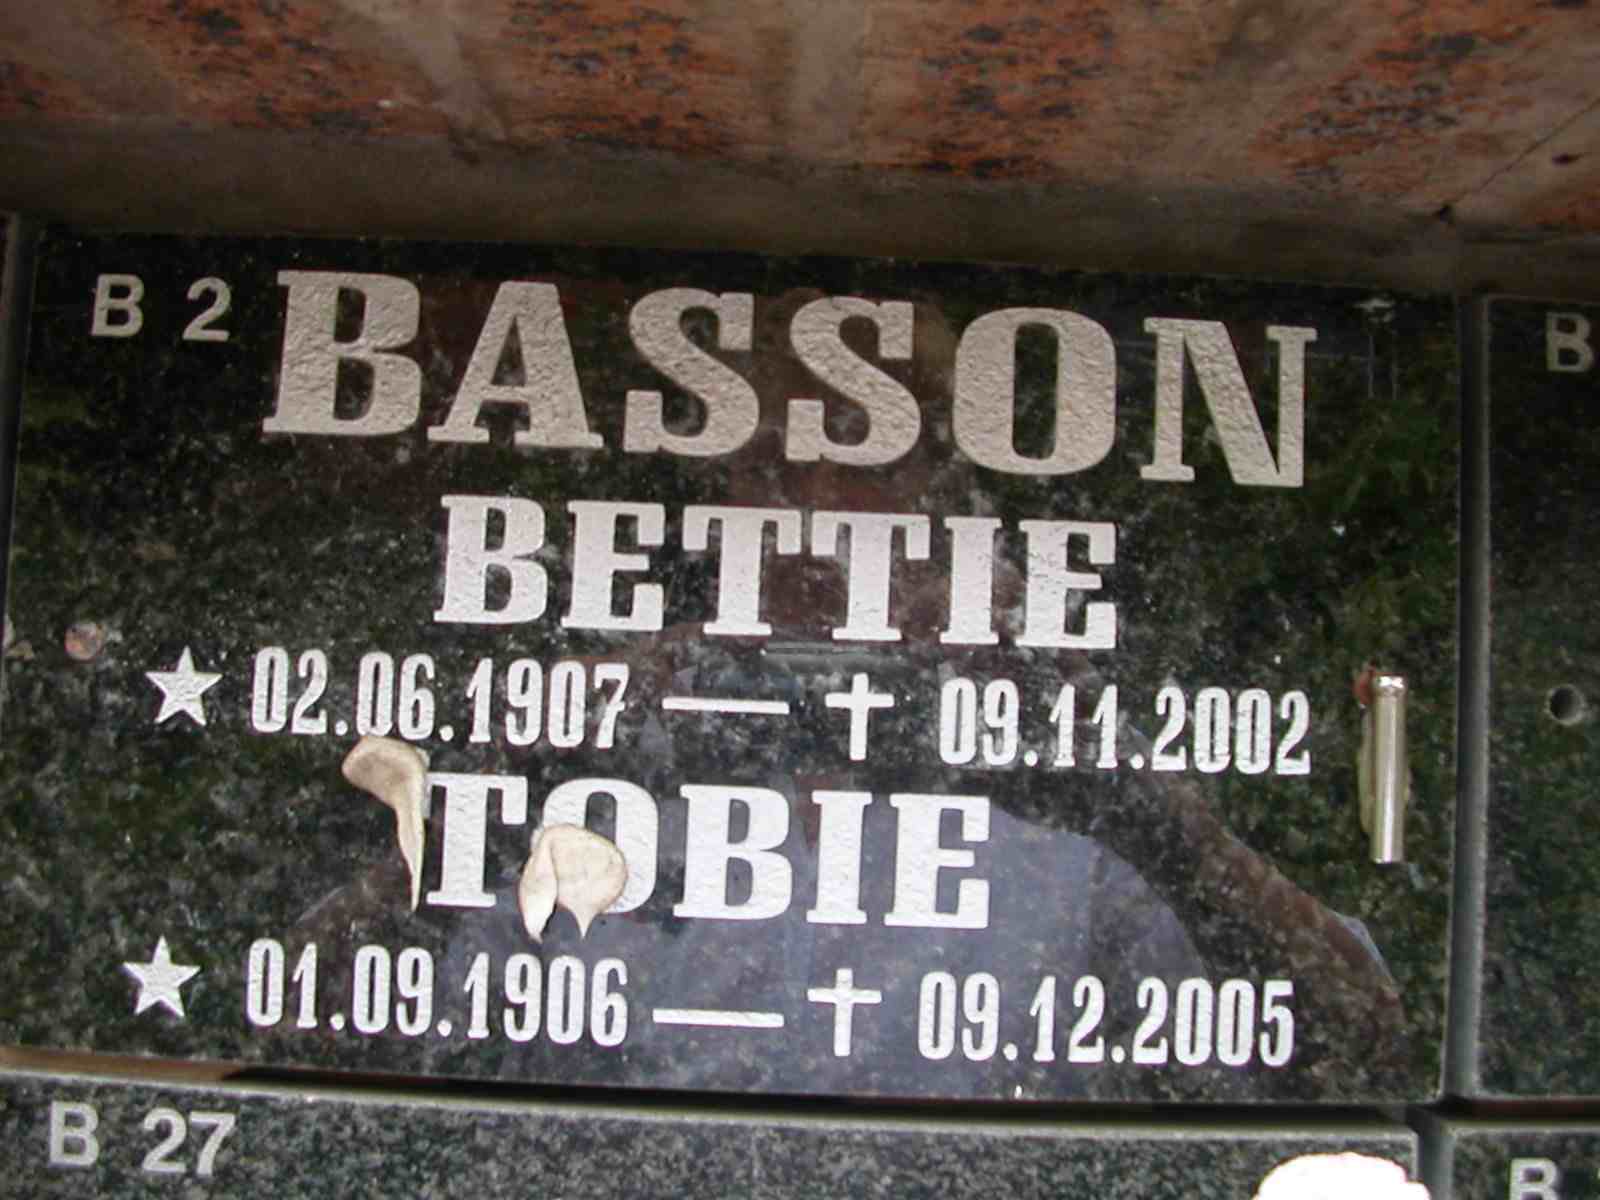 BASSON Tobie 1906-2005 & Bettie 1907-2002